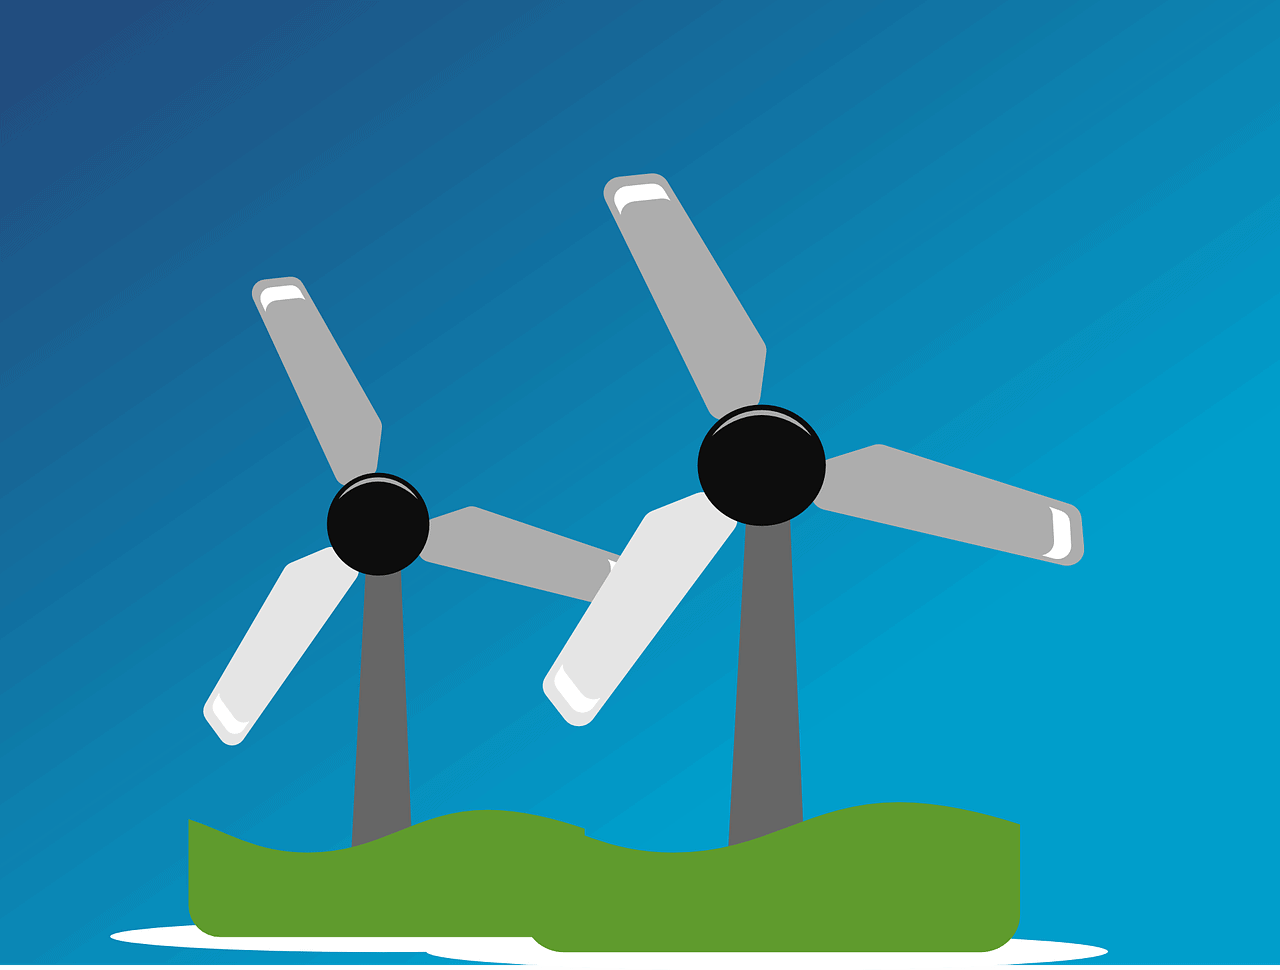 windmills, wind power, wind farm